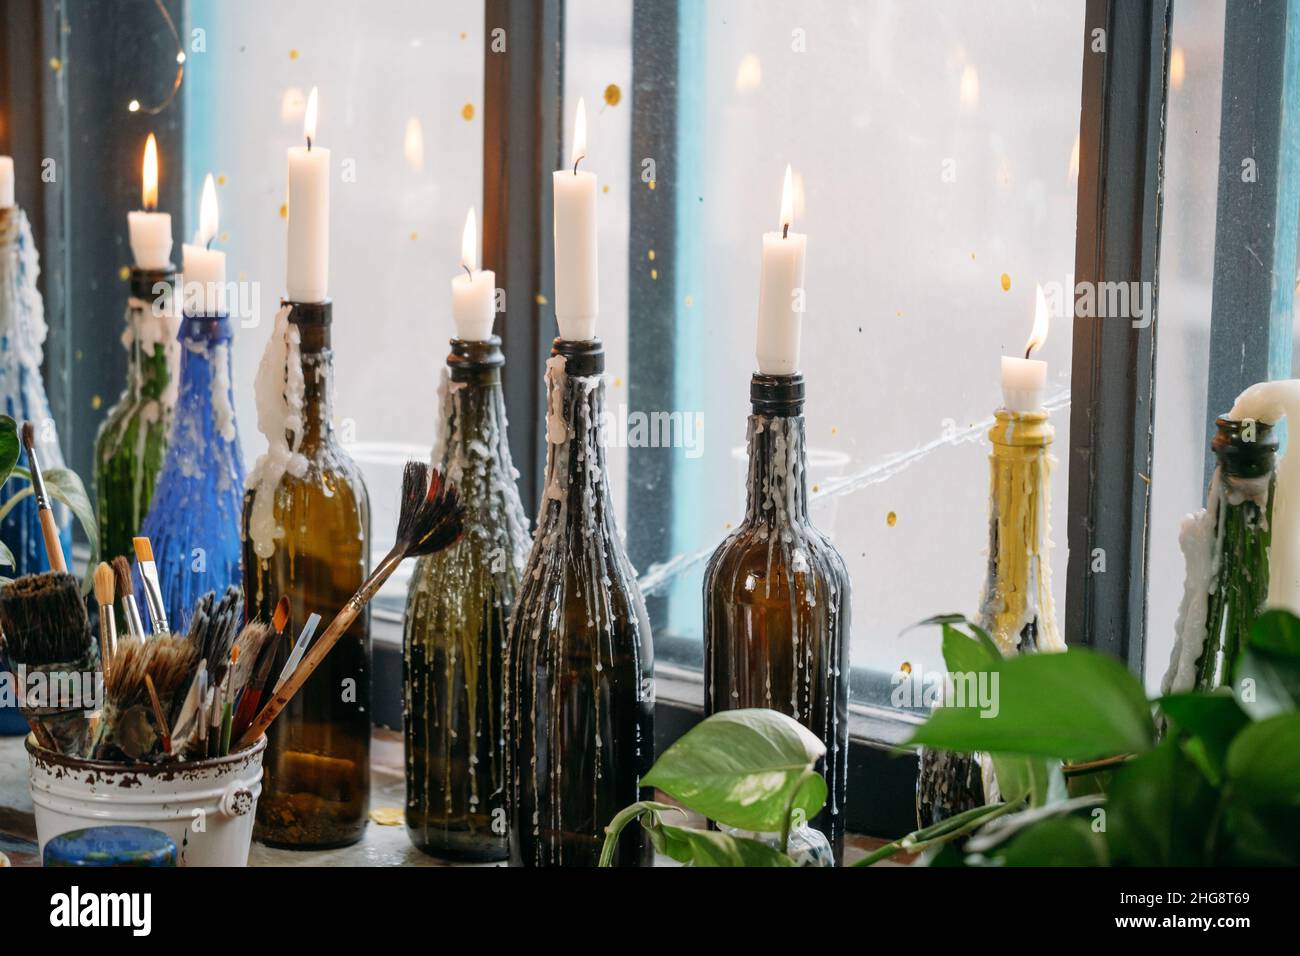 Kerzen in bunten Flaschen. Geschmolzenes Wachs, am Fenster. Natürliches  Licht, kreative Atmosphäre Vintage-Look auf Fensterbank Stockfotografie -  Alamy